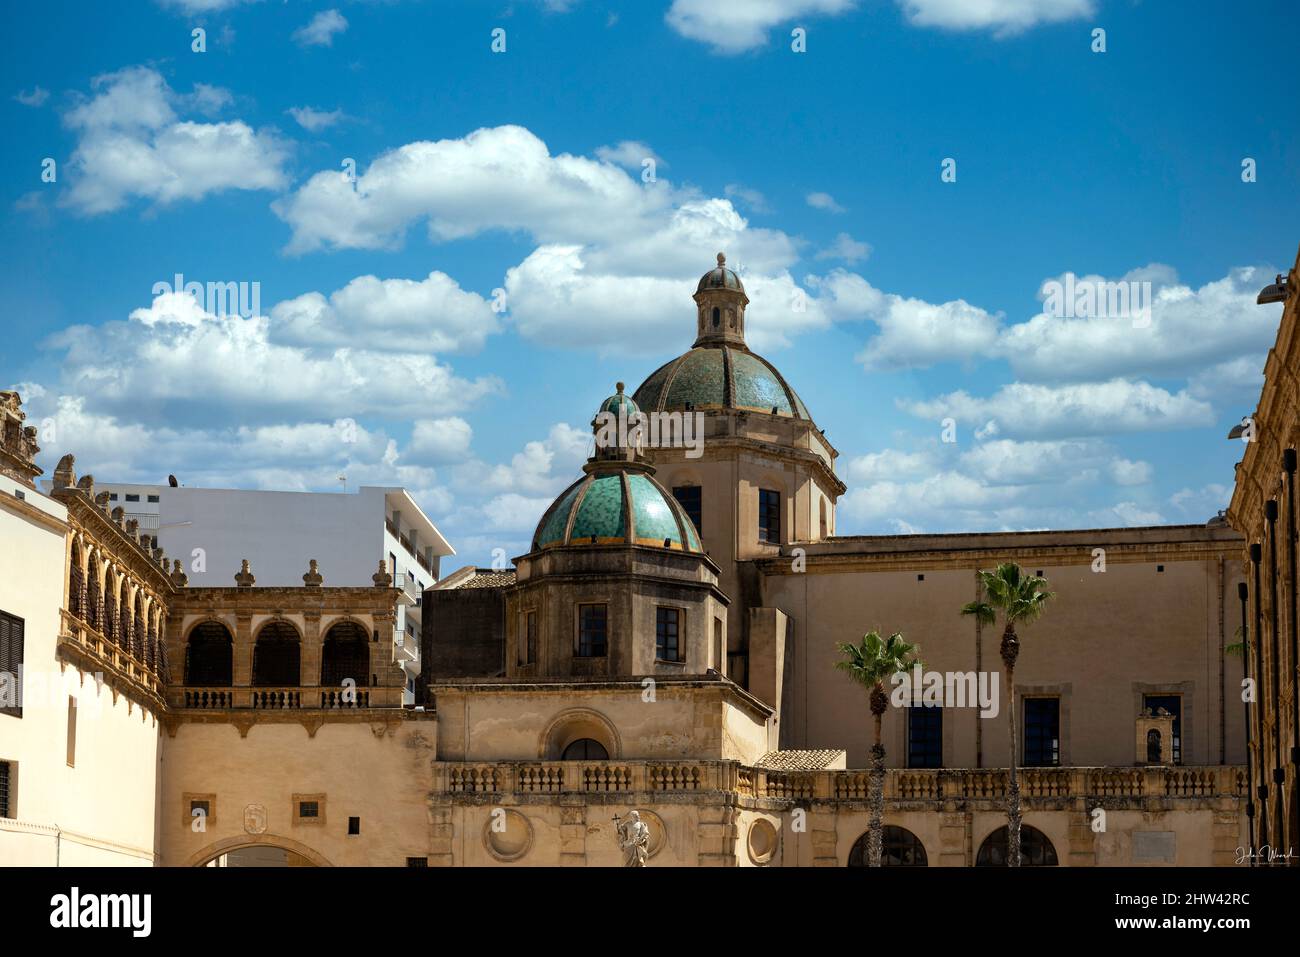 Sehr schönes altes Architekturgebäude im sonnigen schönen sizilien in italien Stockfoto